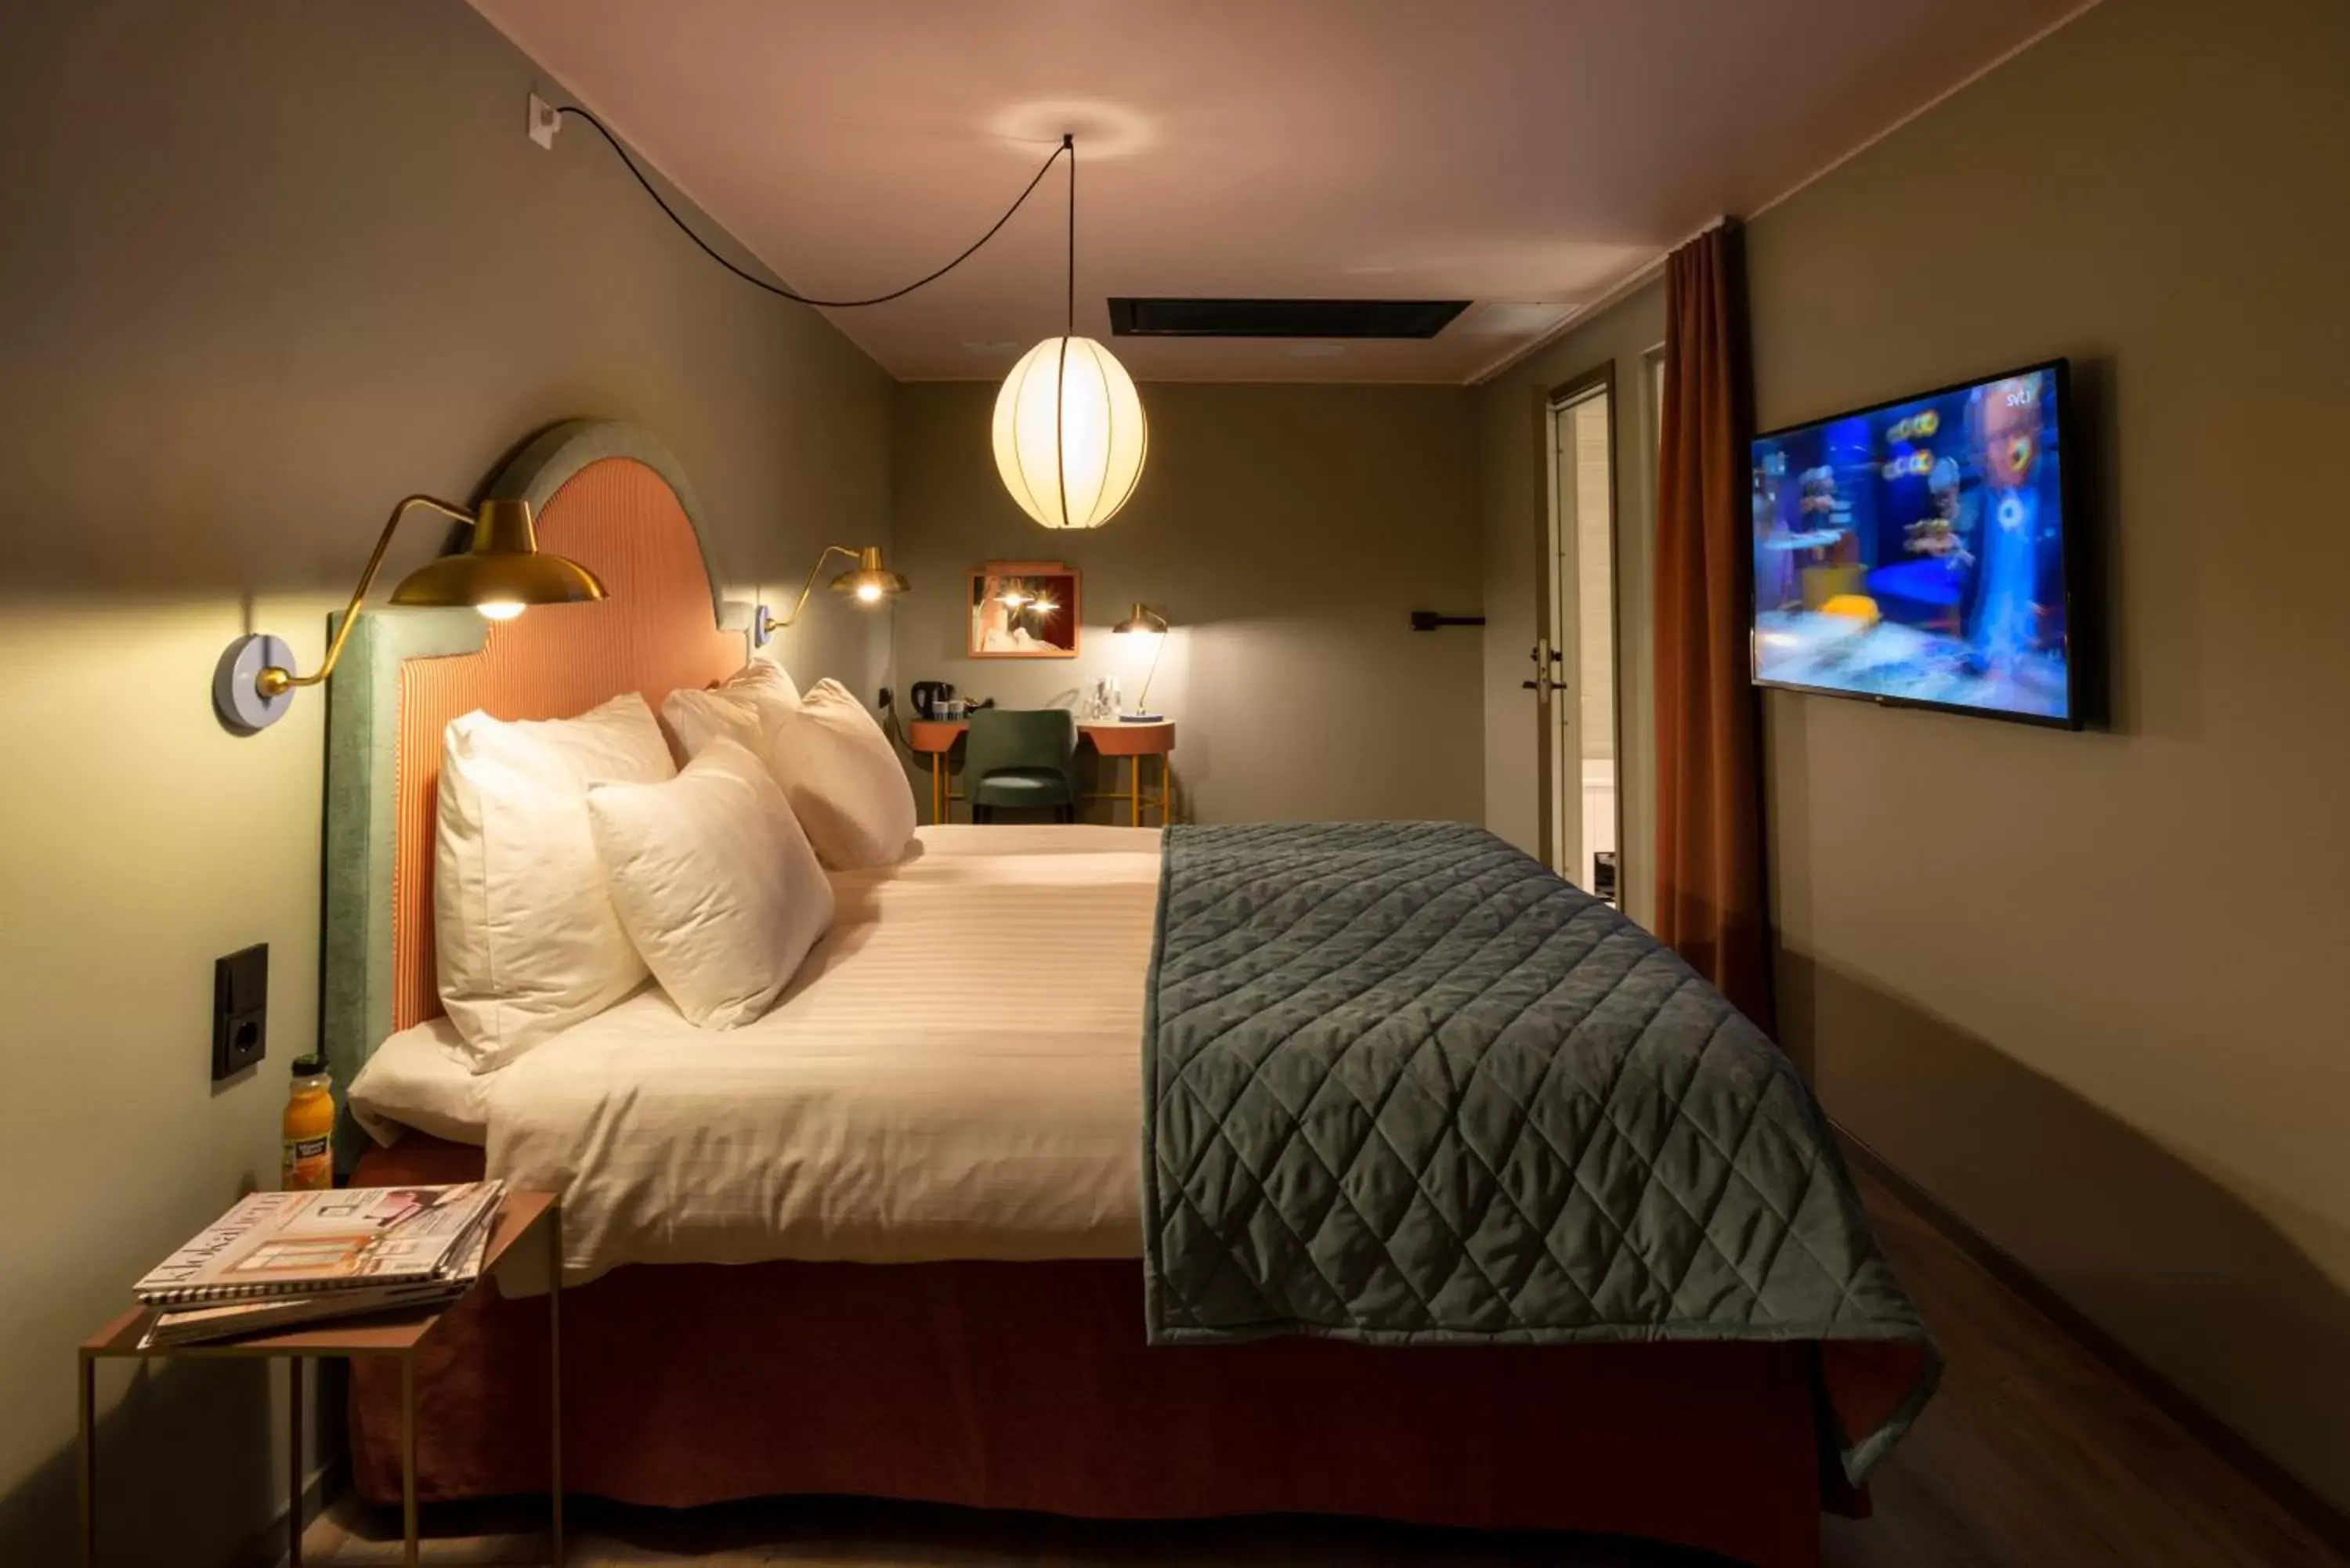 Bedroom, Bed in Best Western Plus Åby Hotel